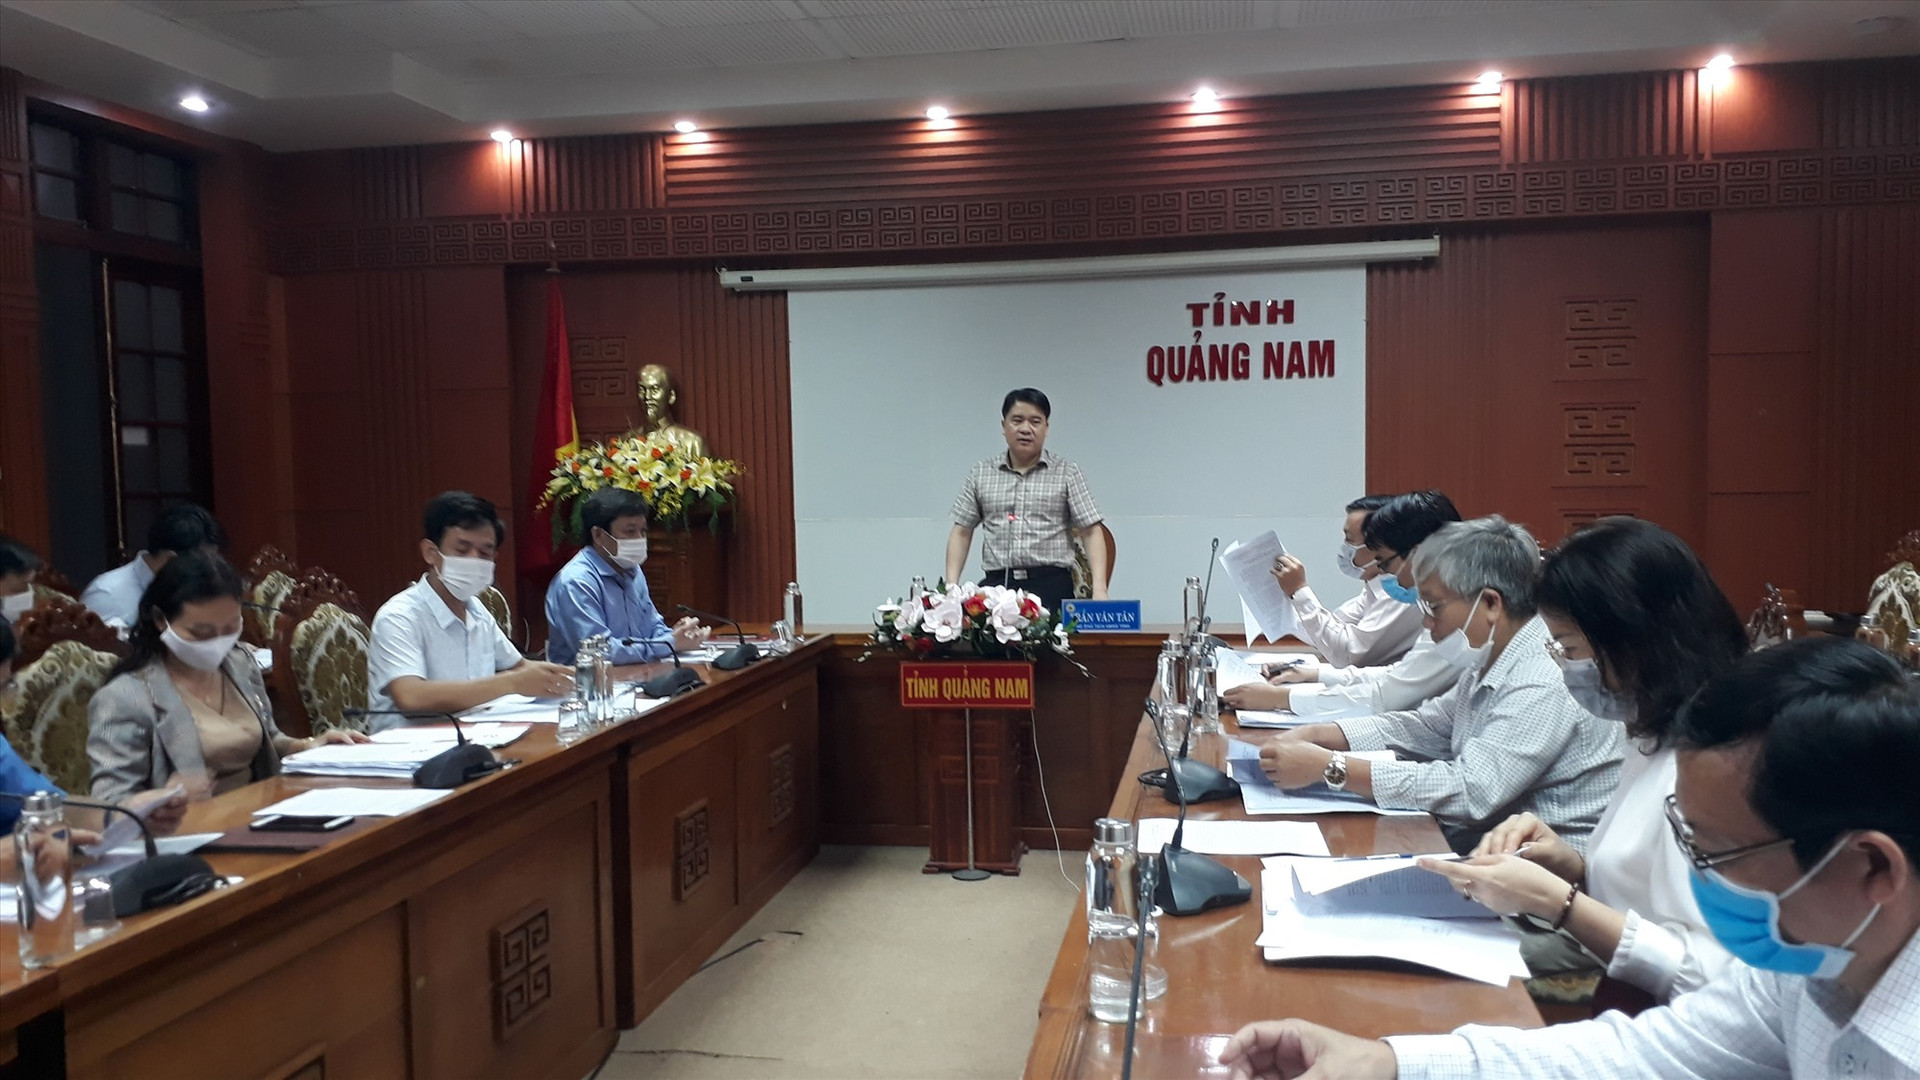 Phó Chủ tịch UBND tỉnh Trần Văn Tân yêu cầu tổ chức lại Trường Mần non thực hành cho phù hợp. Ảnh: X.P